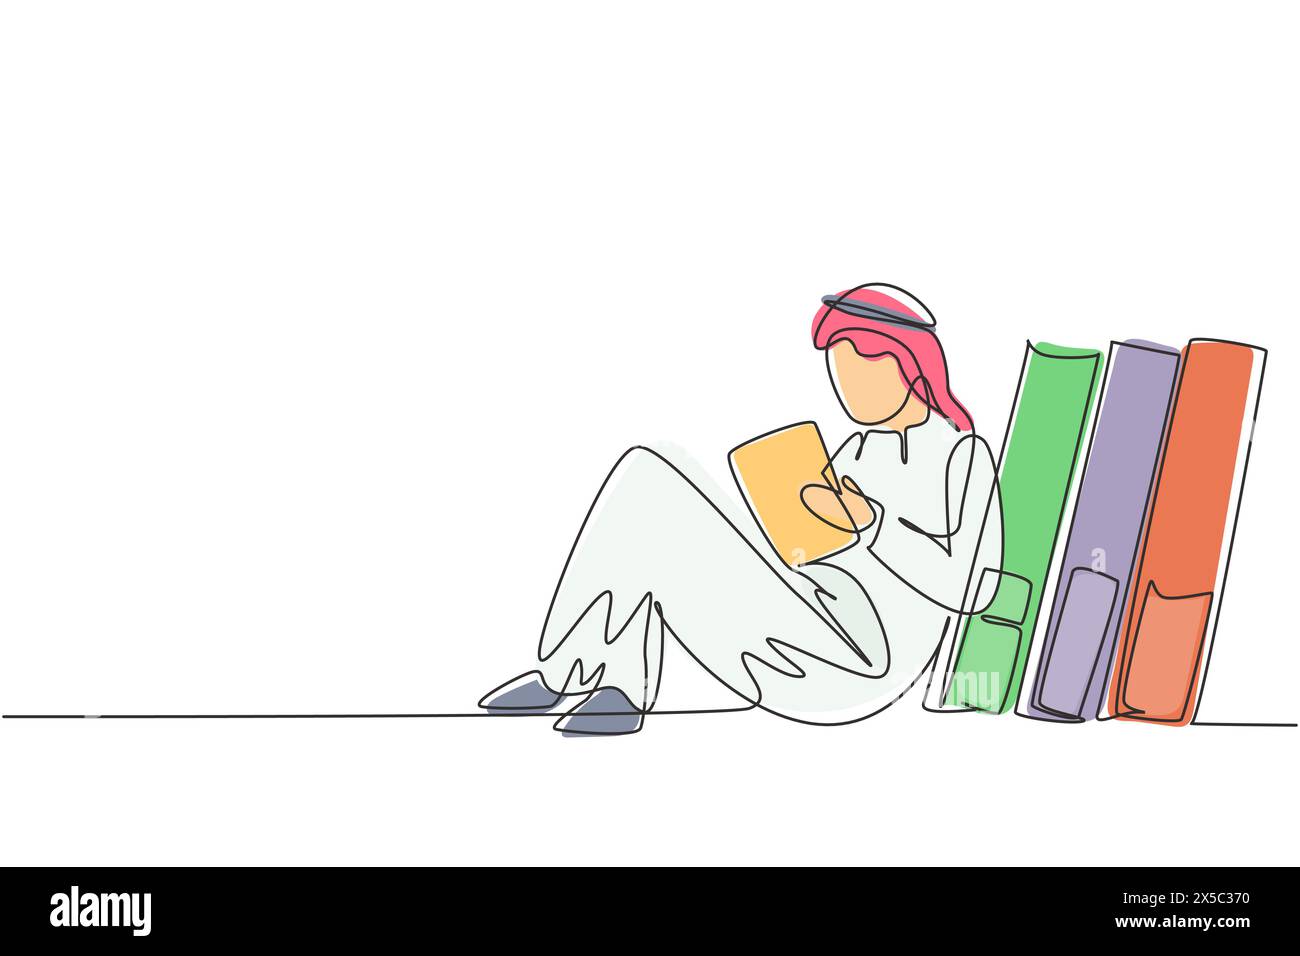 Einzelne durchgehende Linie, die junge arabische männliche Leser, Lernen und Rückenlehne auf einem Stapel großer Bücher zeichnet. Zu Hause lernen. Intelligenter Schüler, Bildung. Dynami Stock Vektor